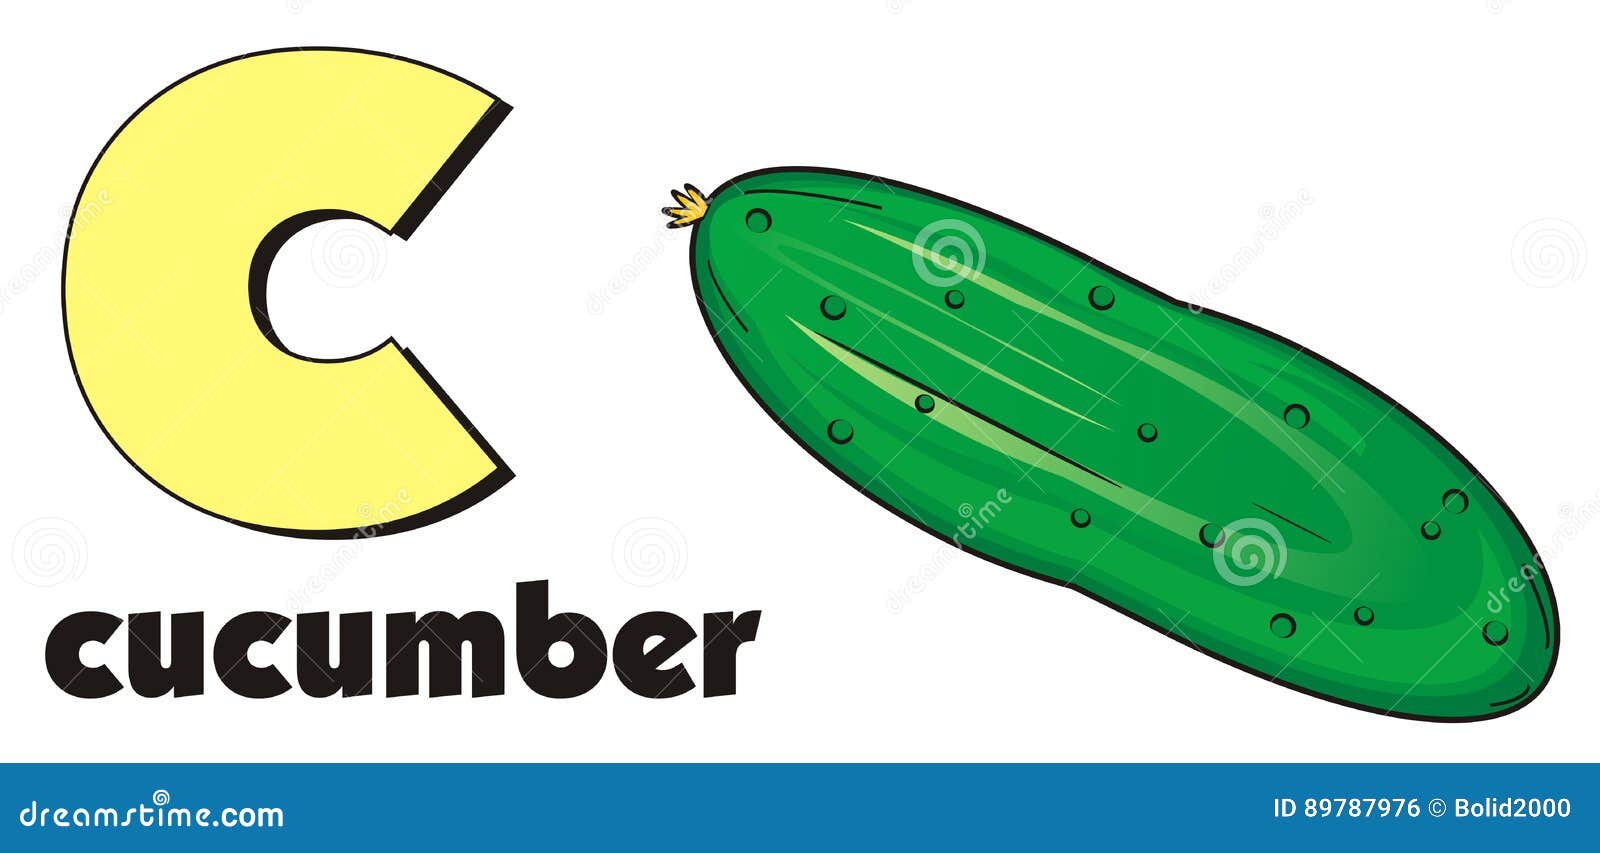 Огурец на английском языке. Огурец на английском. Cucumber слово. Cucumber транскрипция. Надпись Кукумбер.